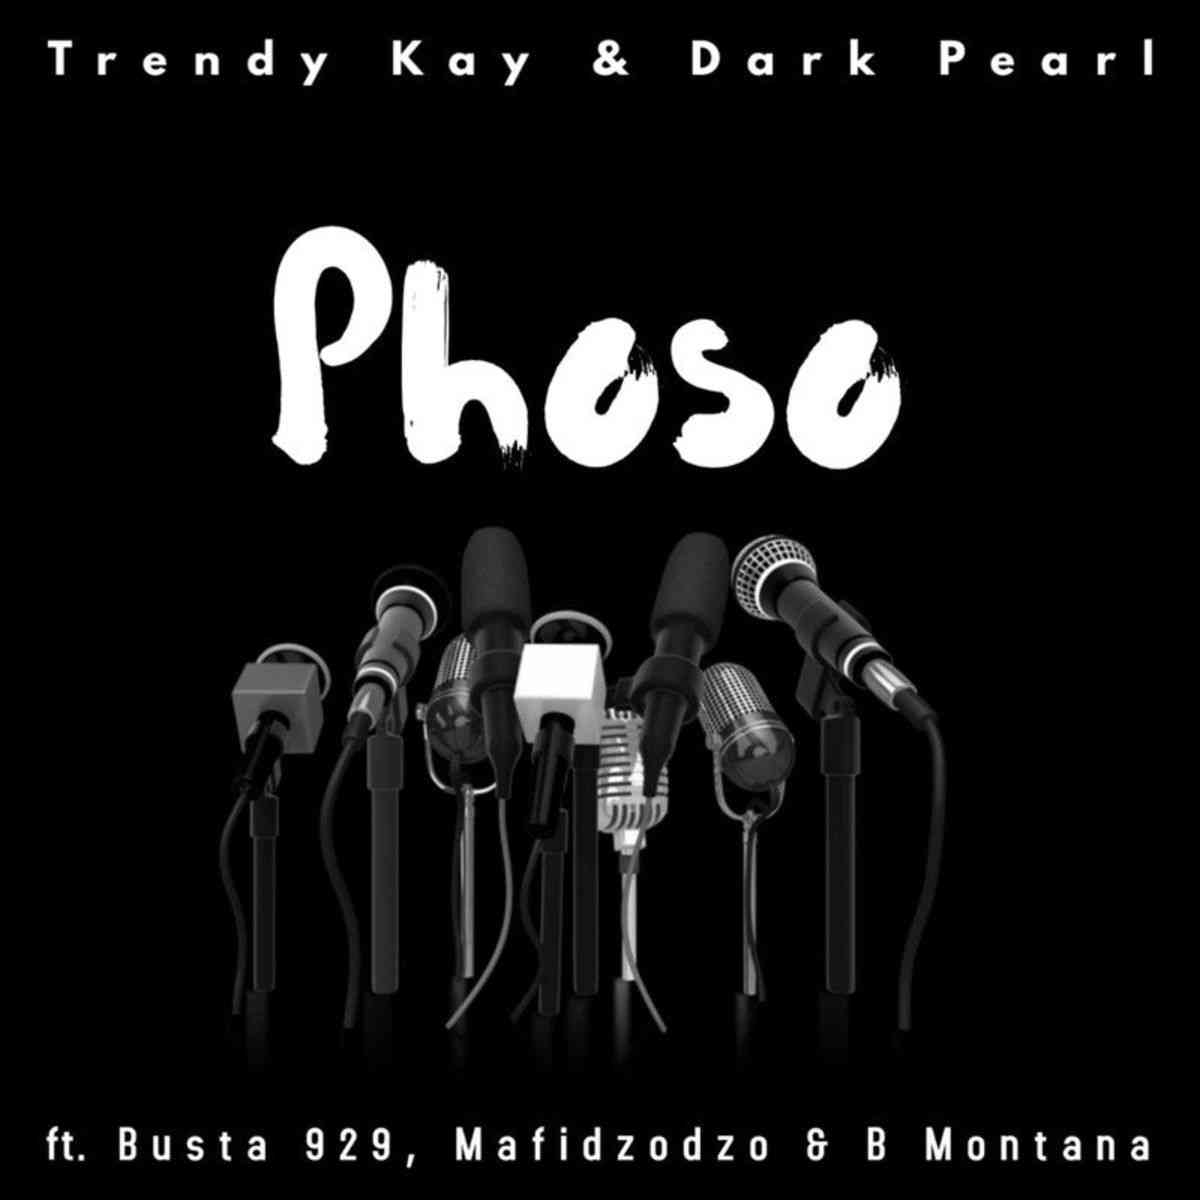 Busta 929 & Trendy Kay Phoso ft. Dark Pearl, Mafidzodzo & B Montana